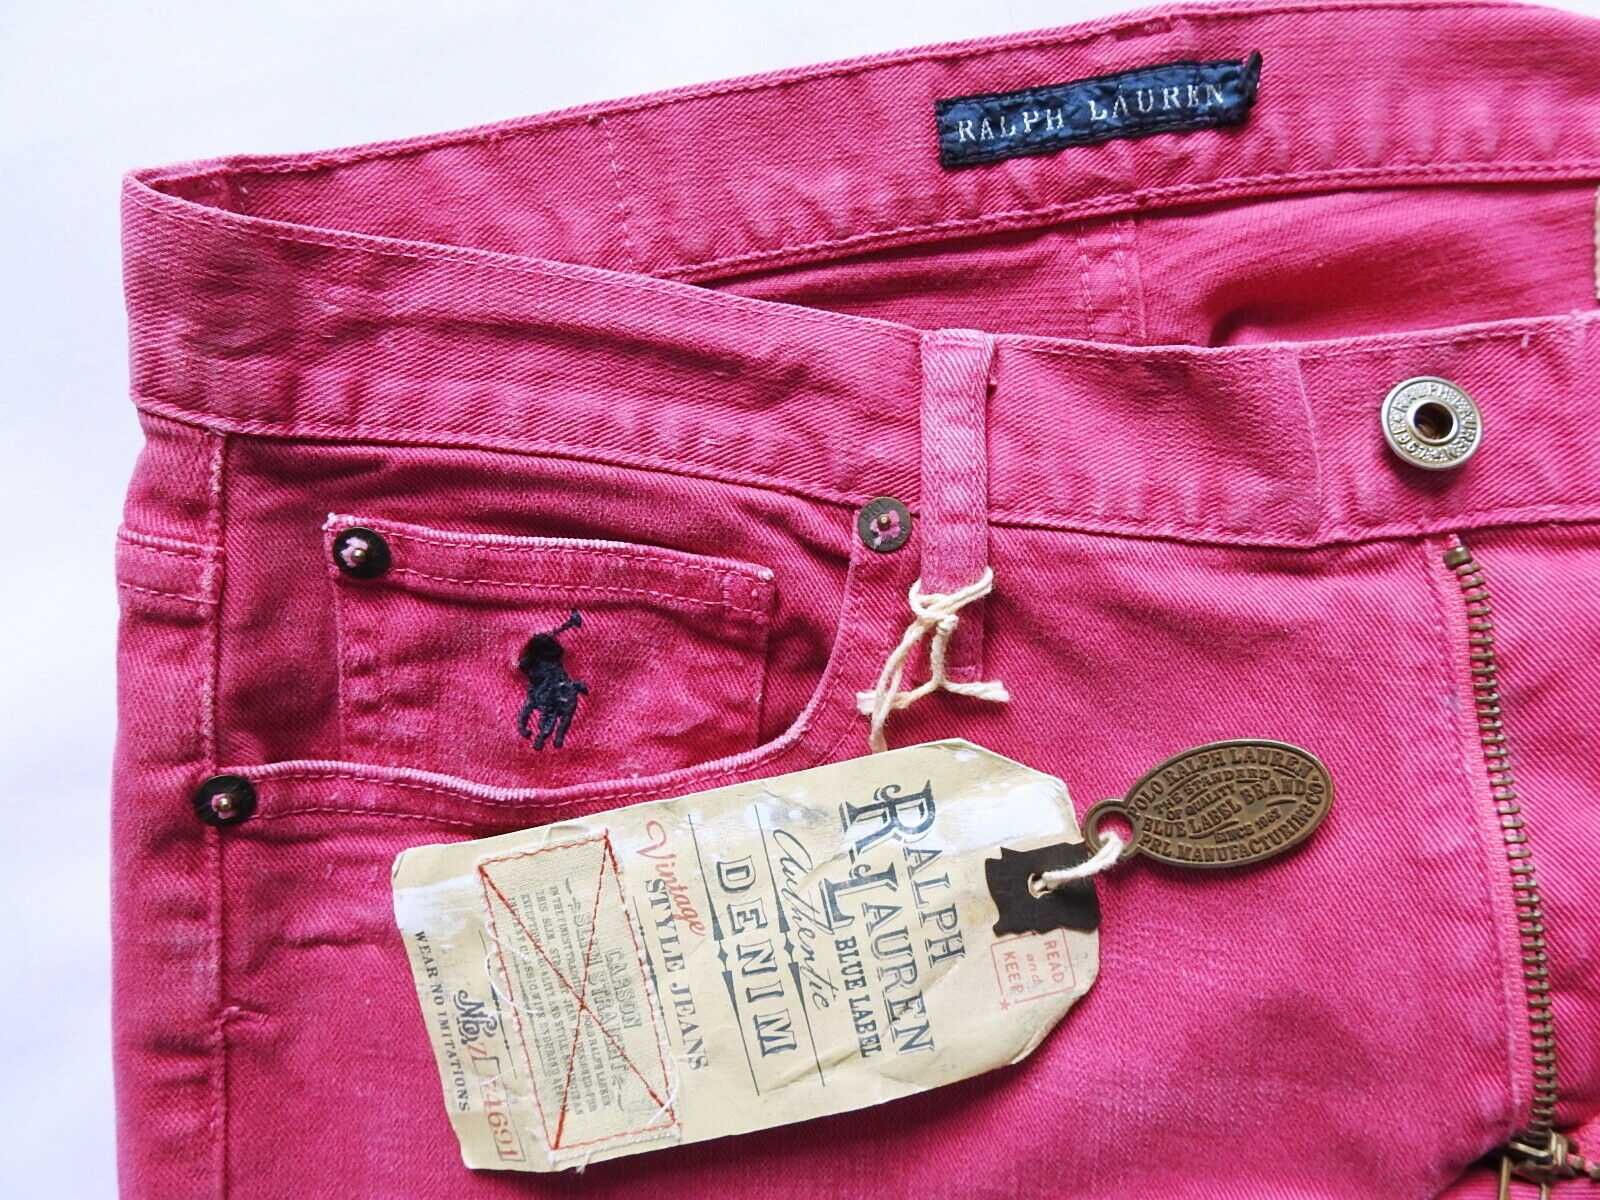 Ralph Lauren Carson США Новые джинсы size27 варка малиновые оригинал